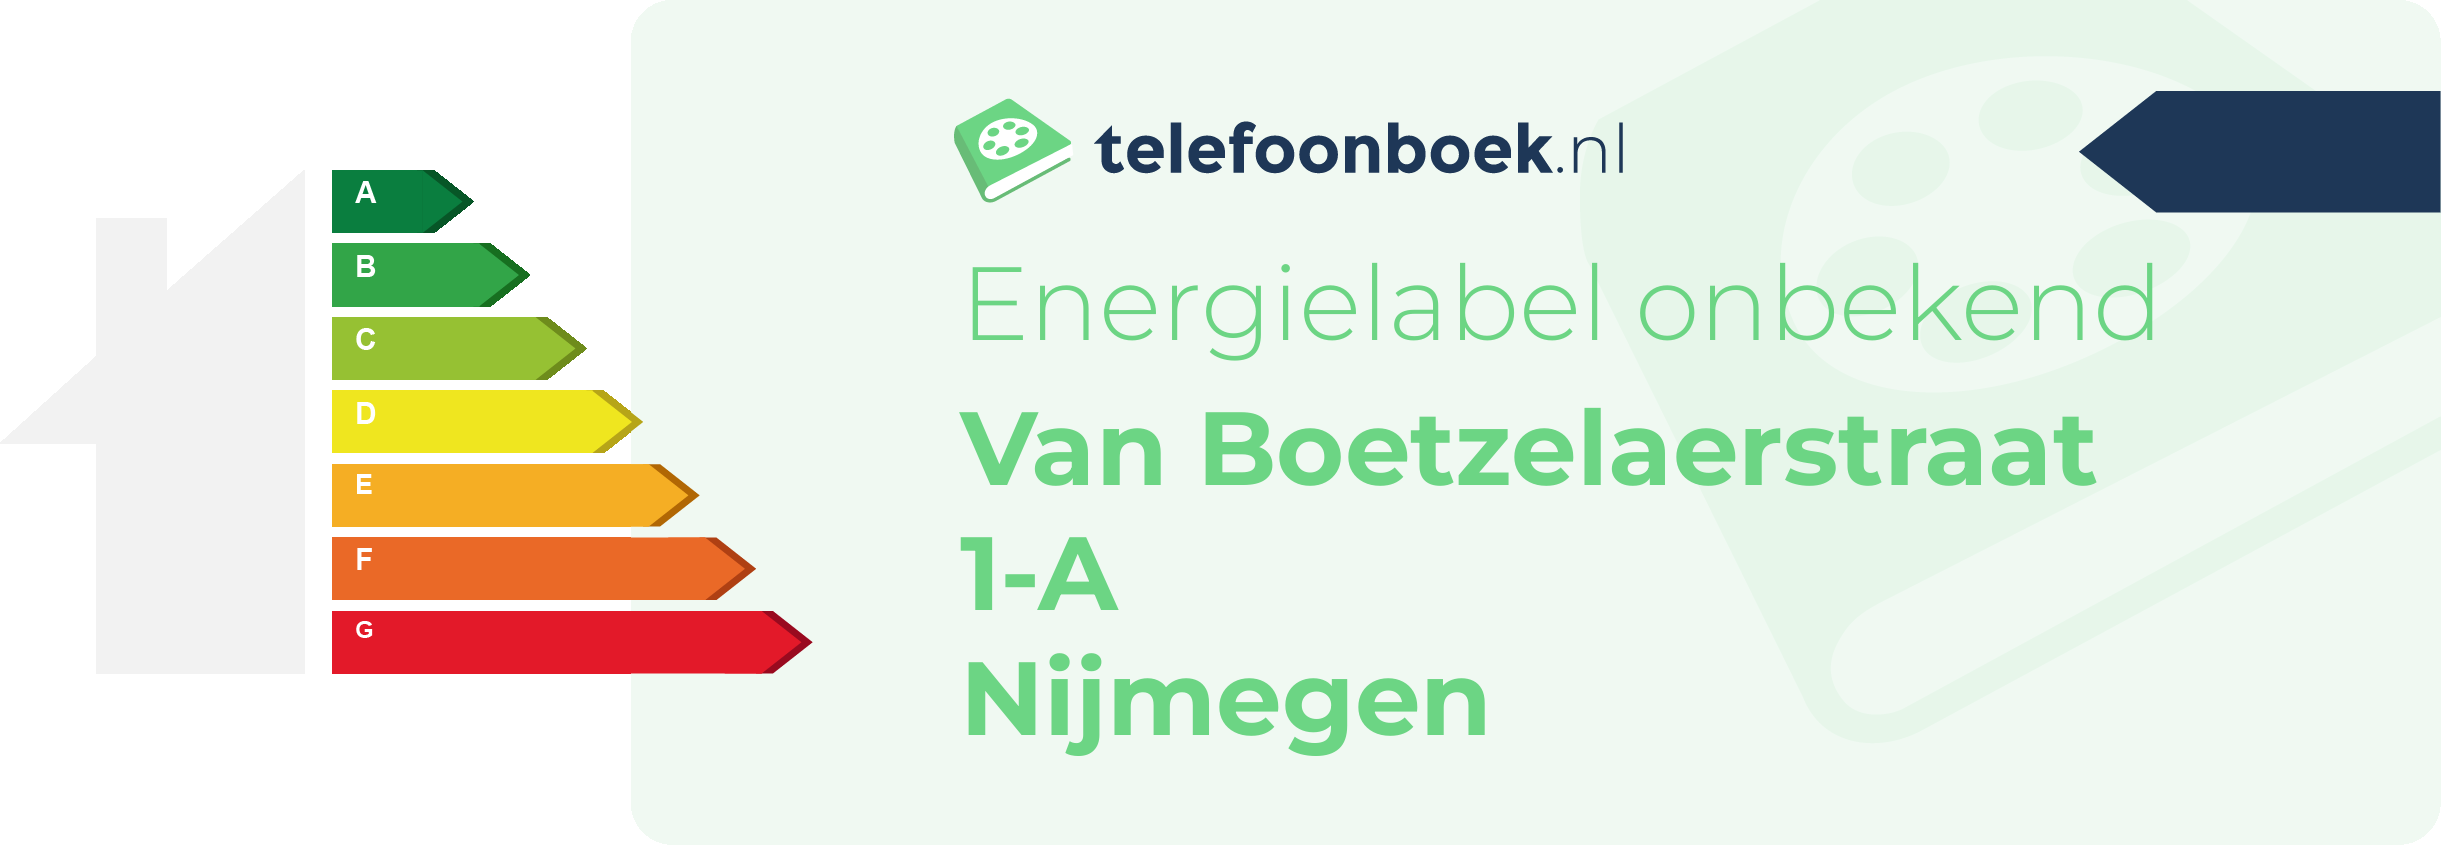 Energielabel Van Boetzelaerstraat 1-A Nijmegen